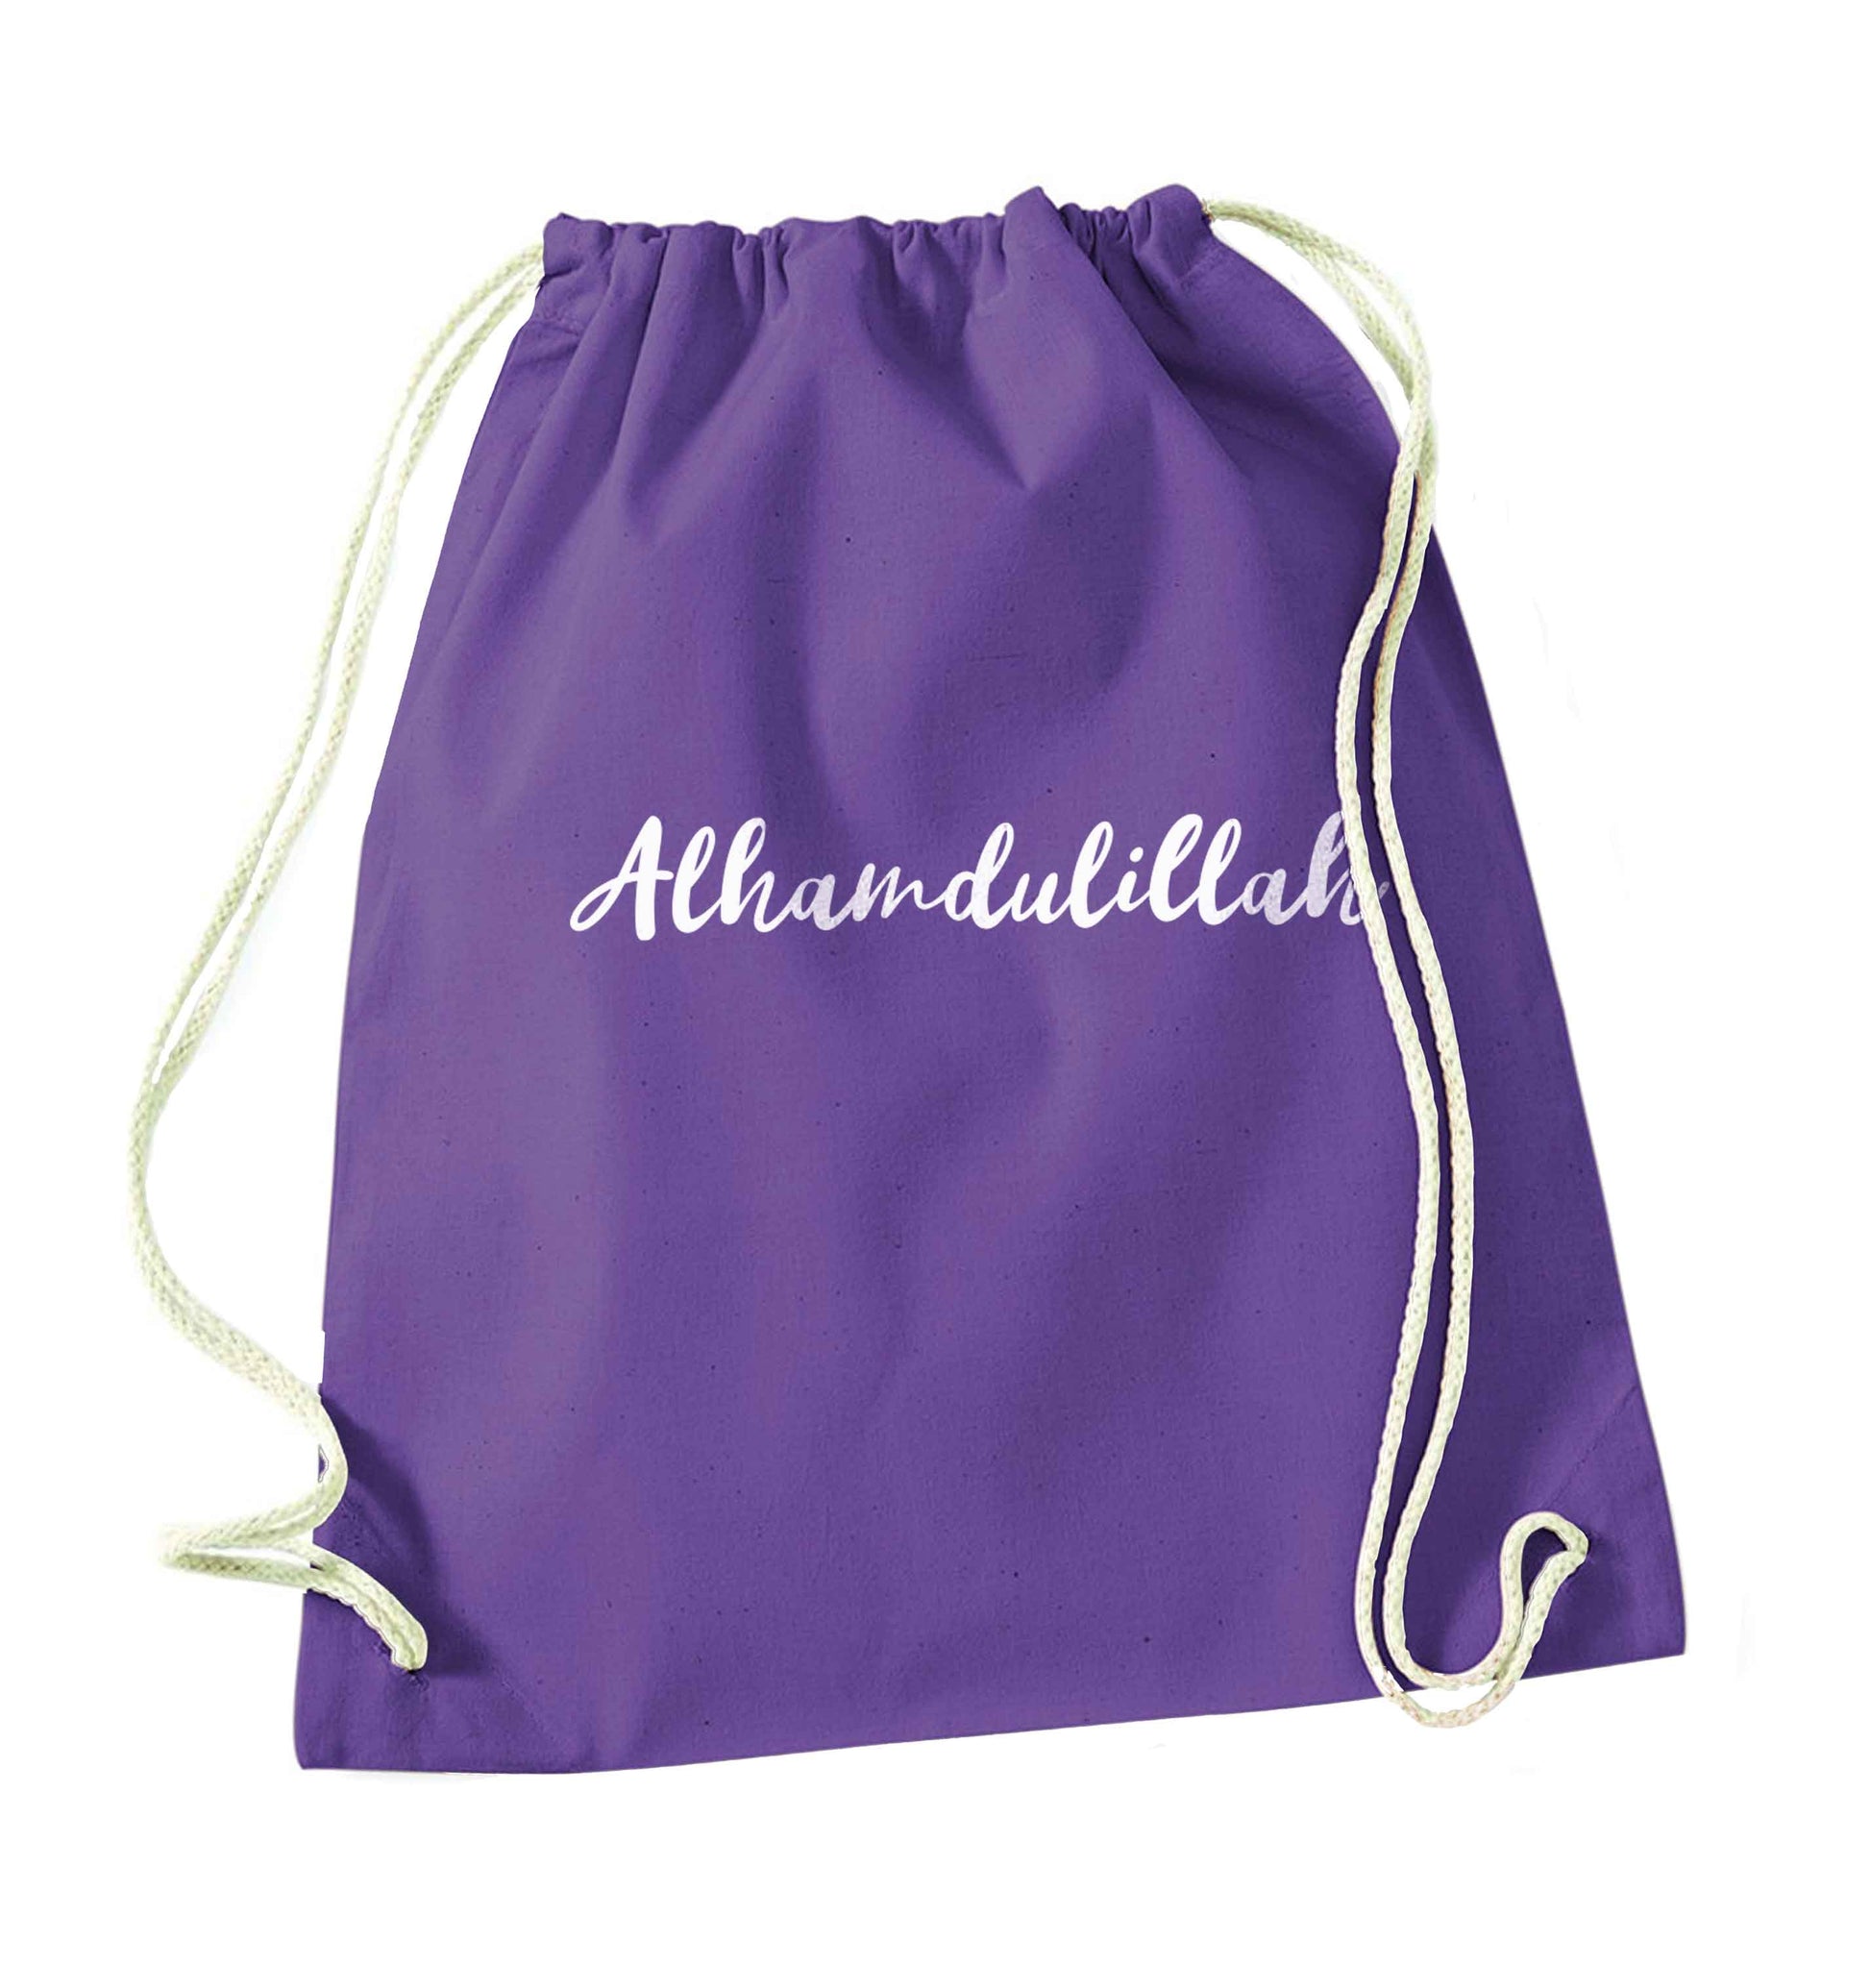 alhamdulillah purple drawstring bag